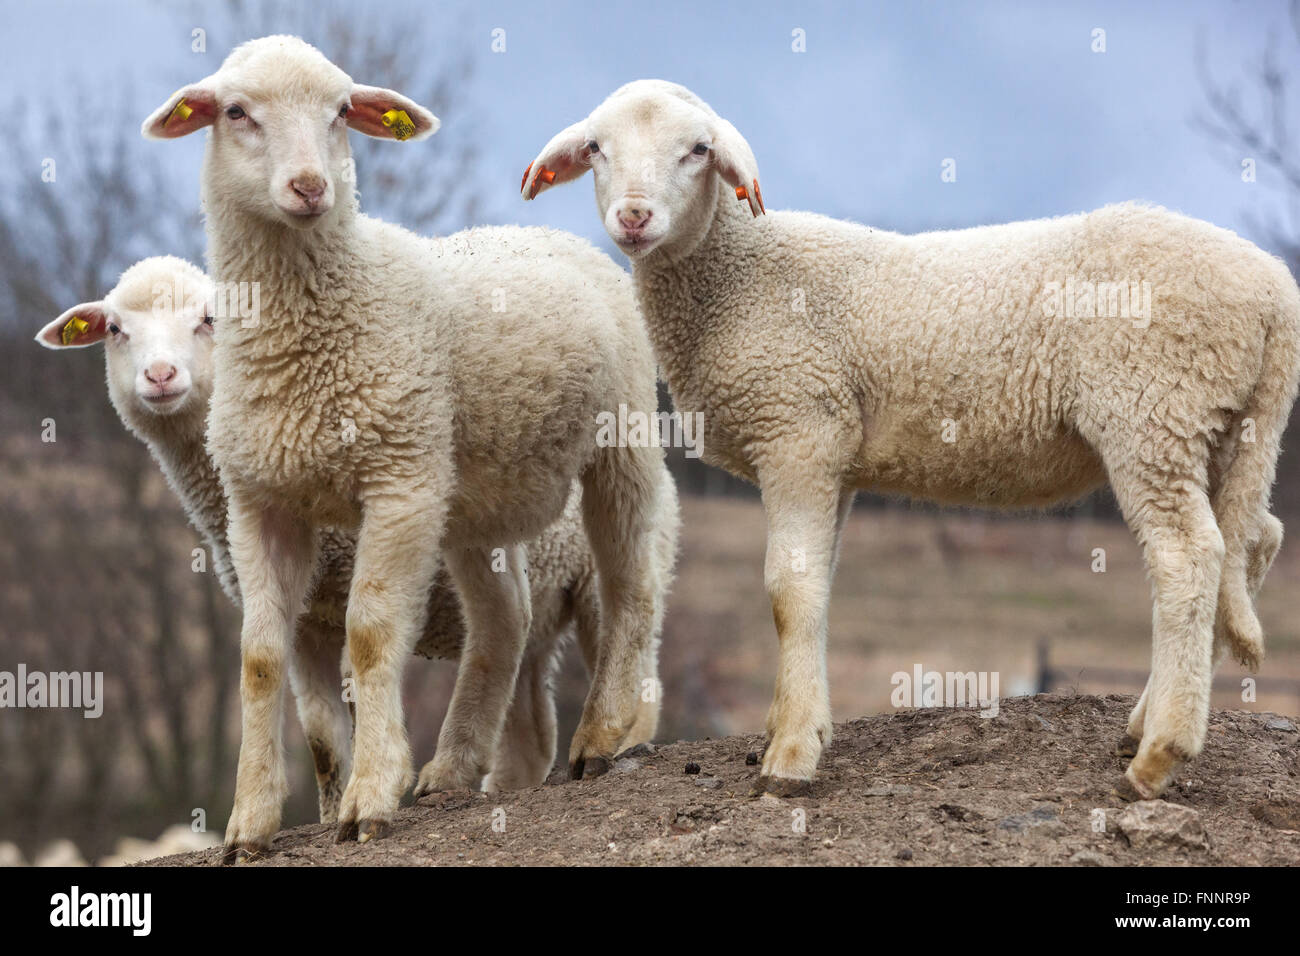 Granja de ovejas tres corderos primavera República Checa Foto de stock